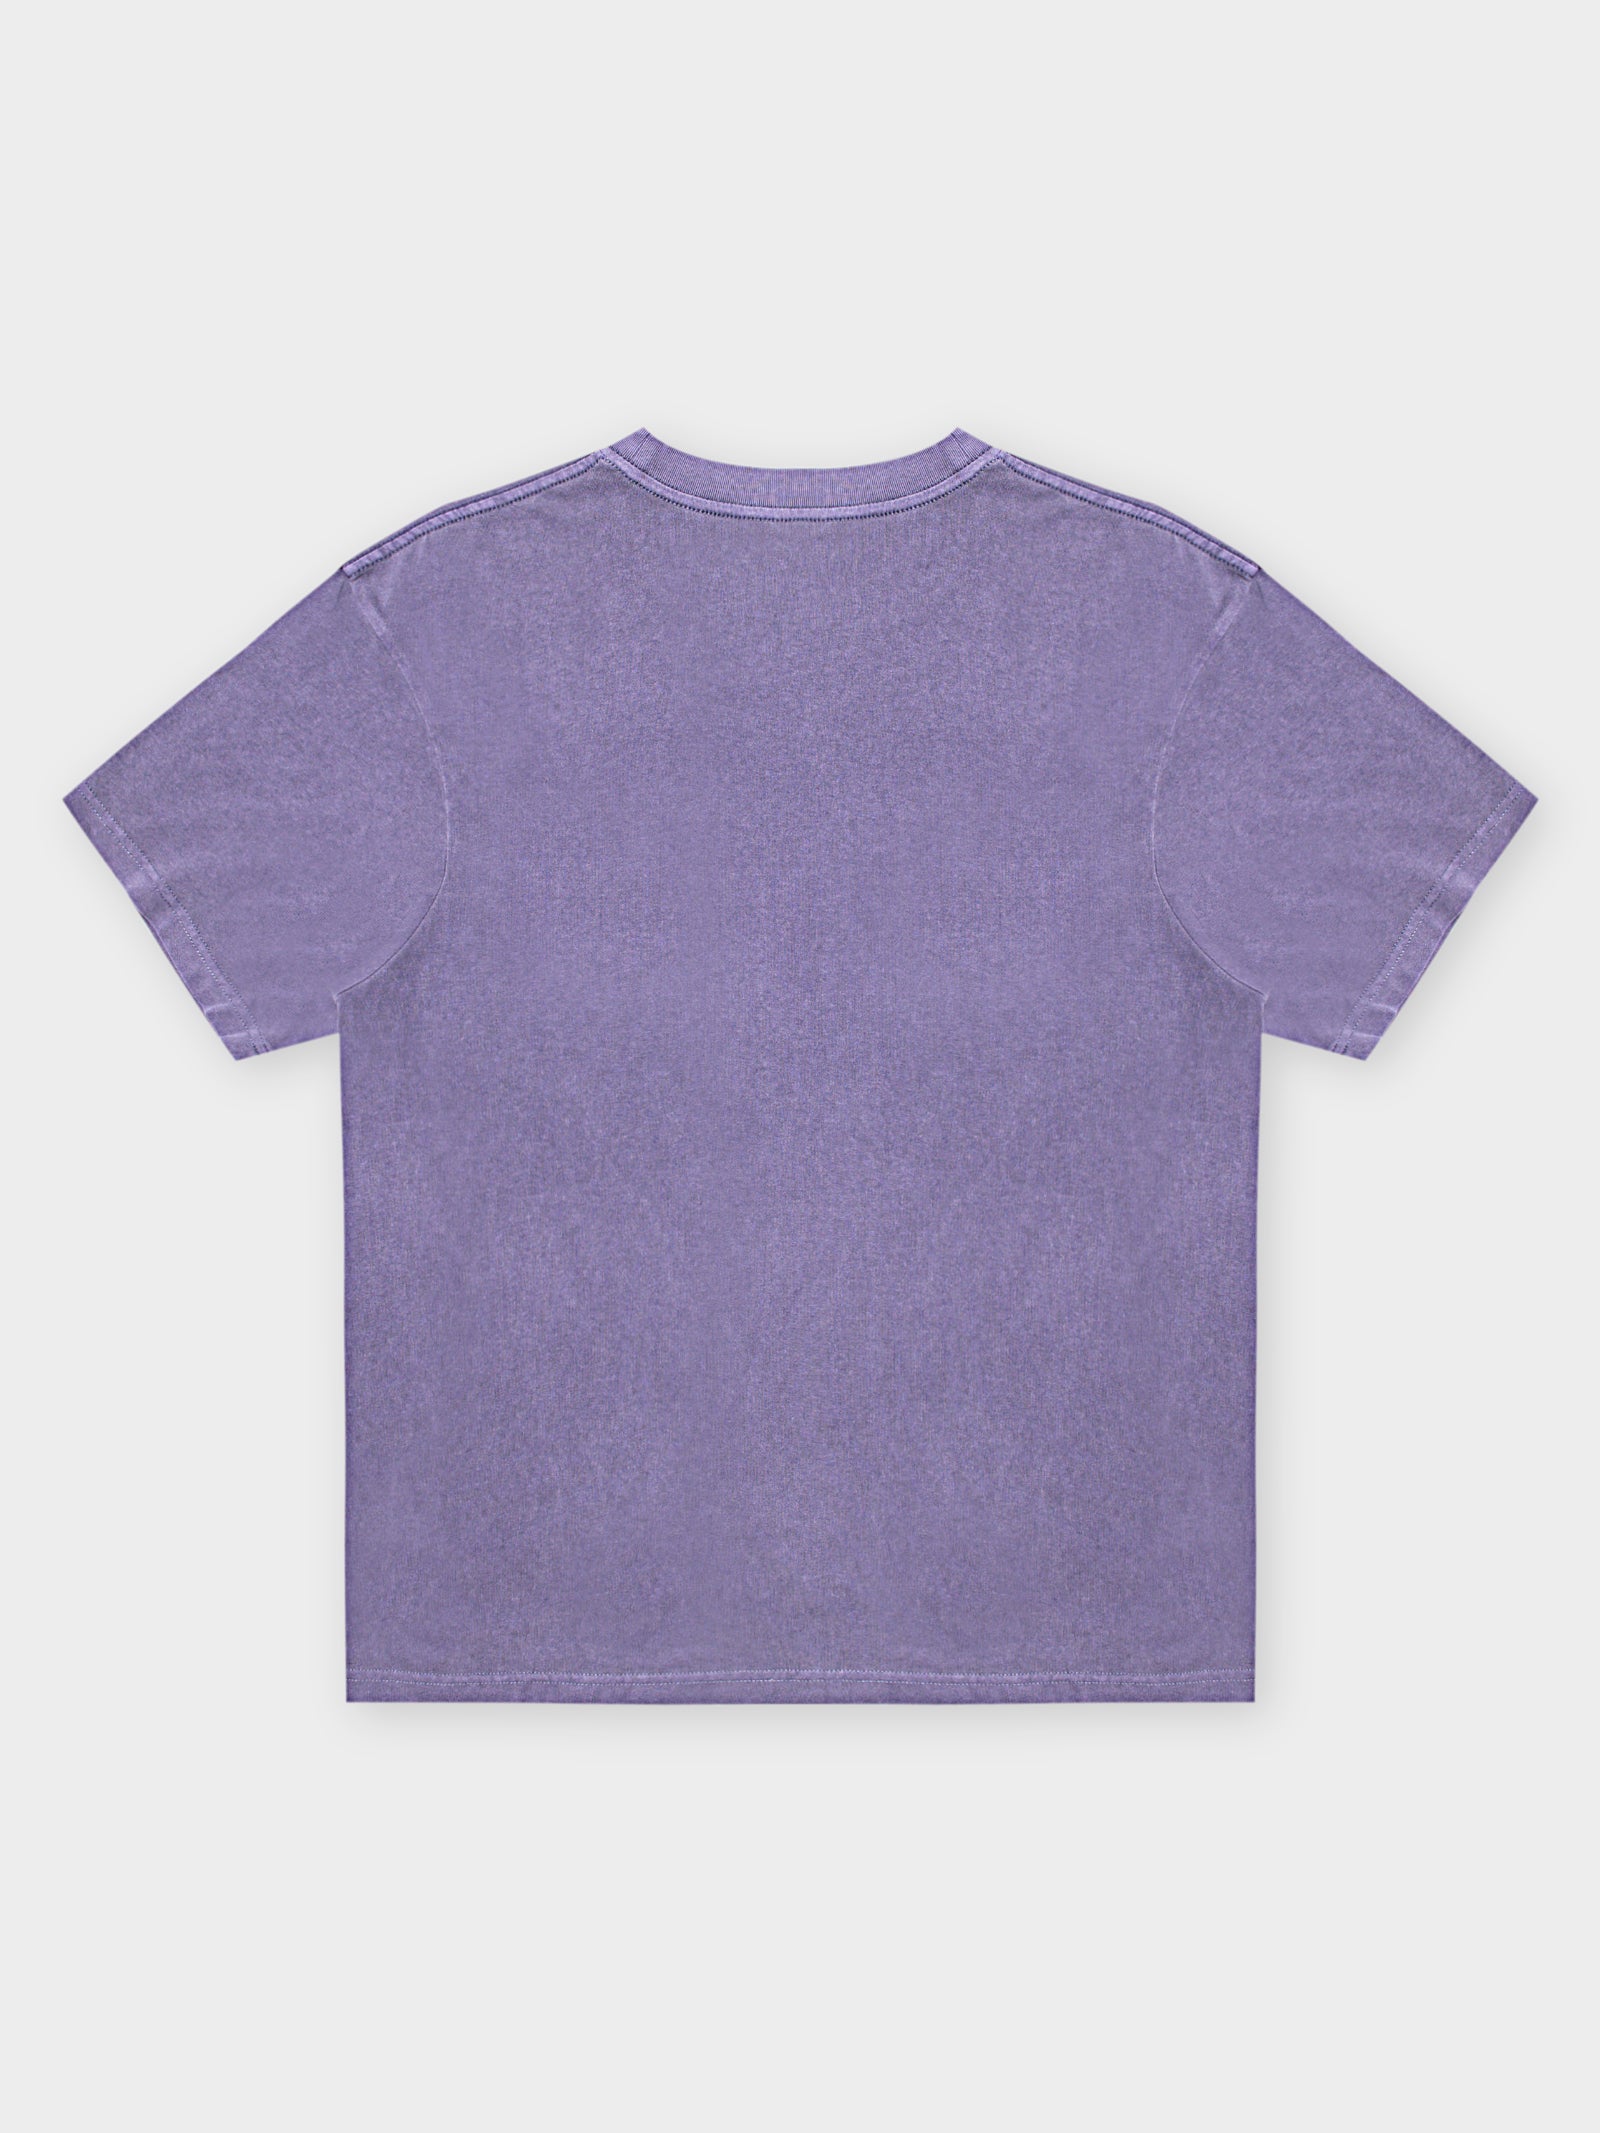 Spring Lakers purple tie dye shirt – RAD Shirts Custom Printing